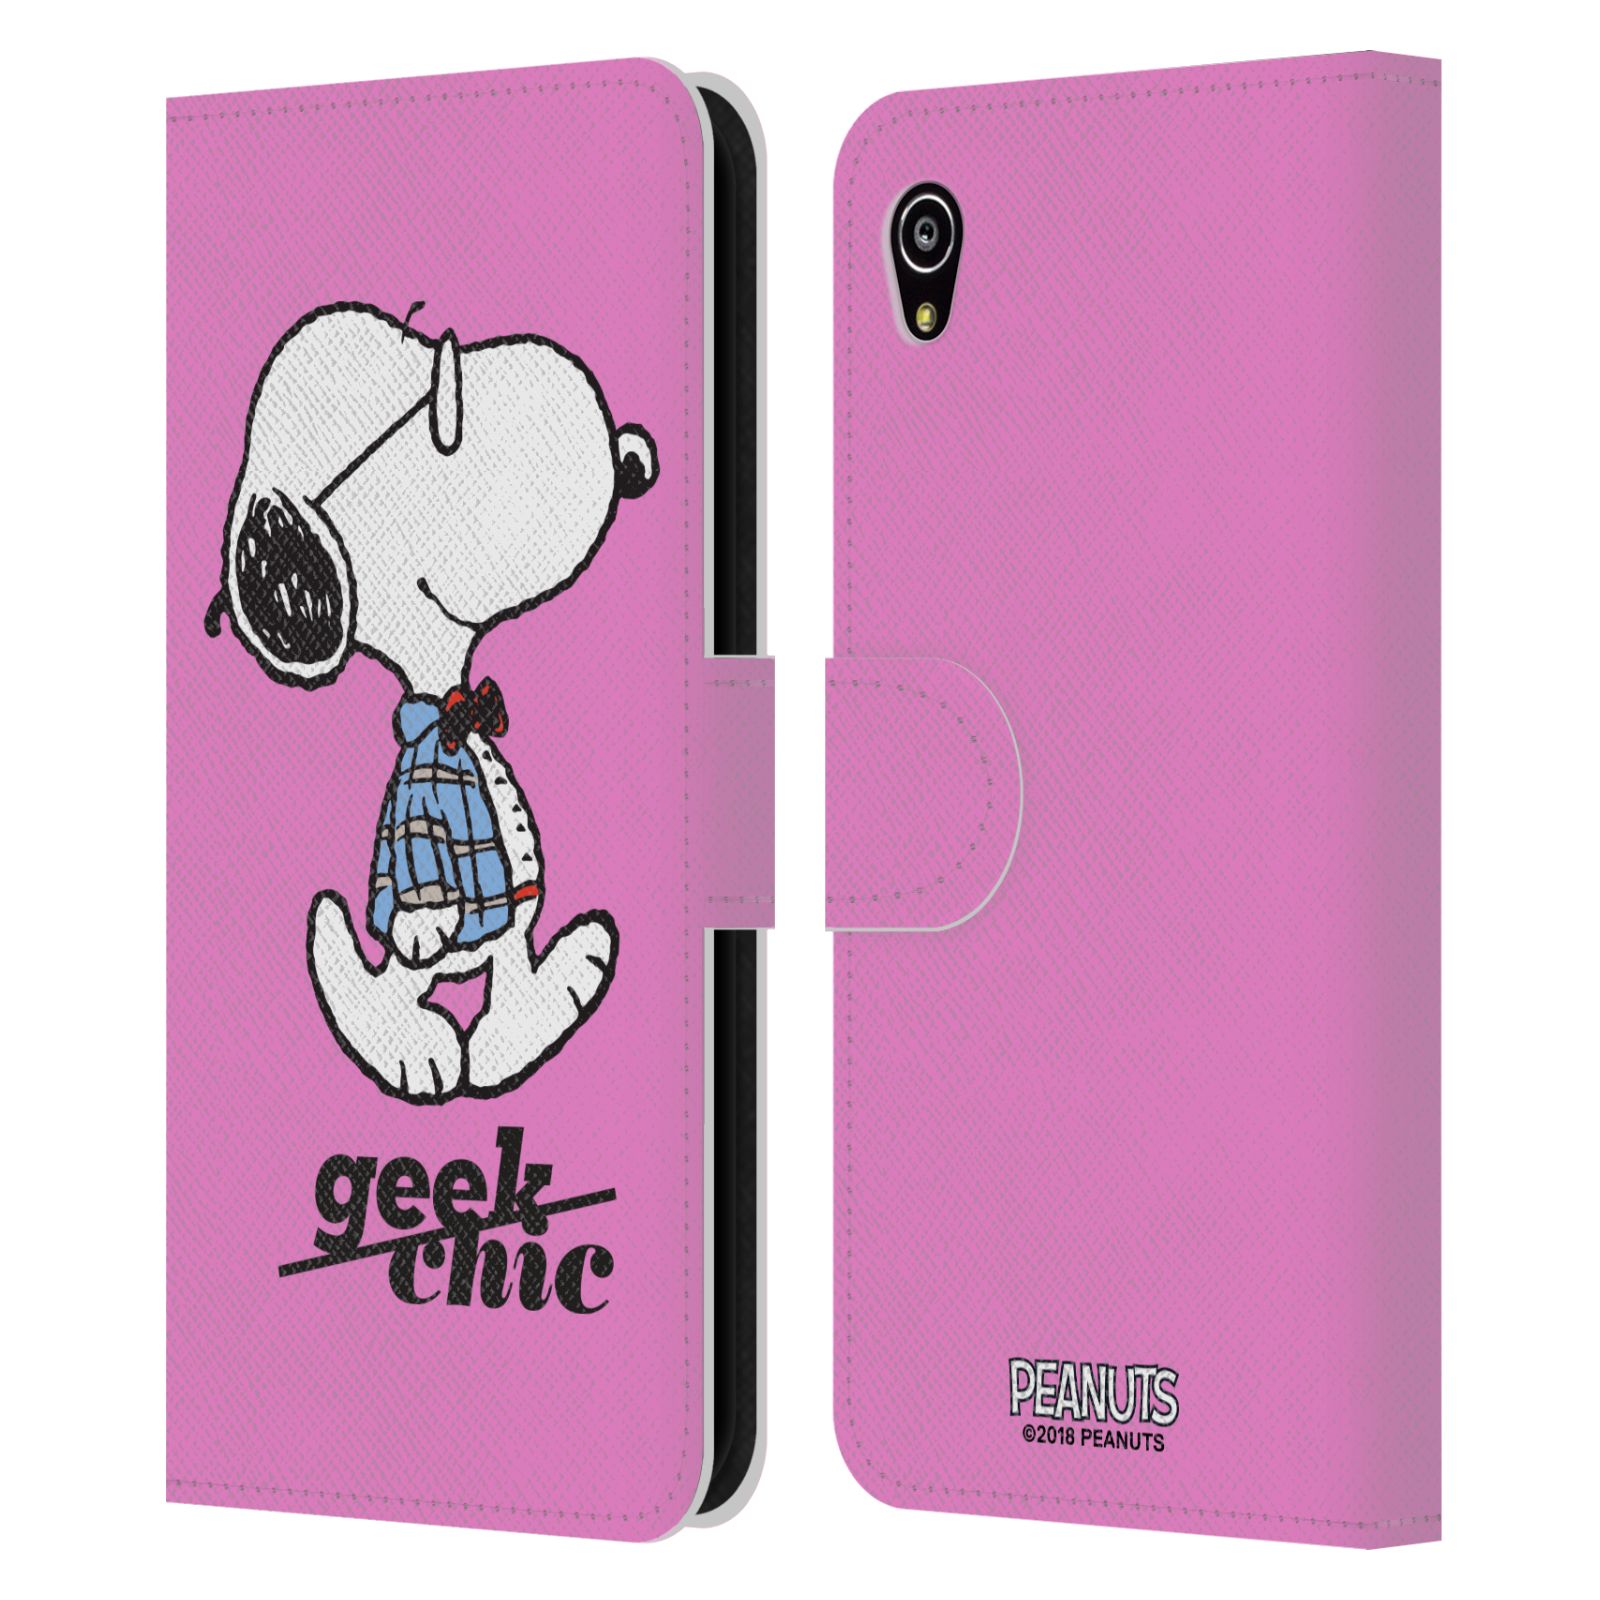 Pouzdro na mobil Sony Xperia M4 Aqua - Head Case - Peanuts - růžový pejsek snoopy nerd